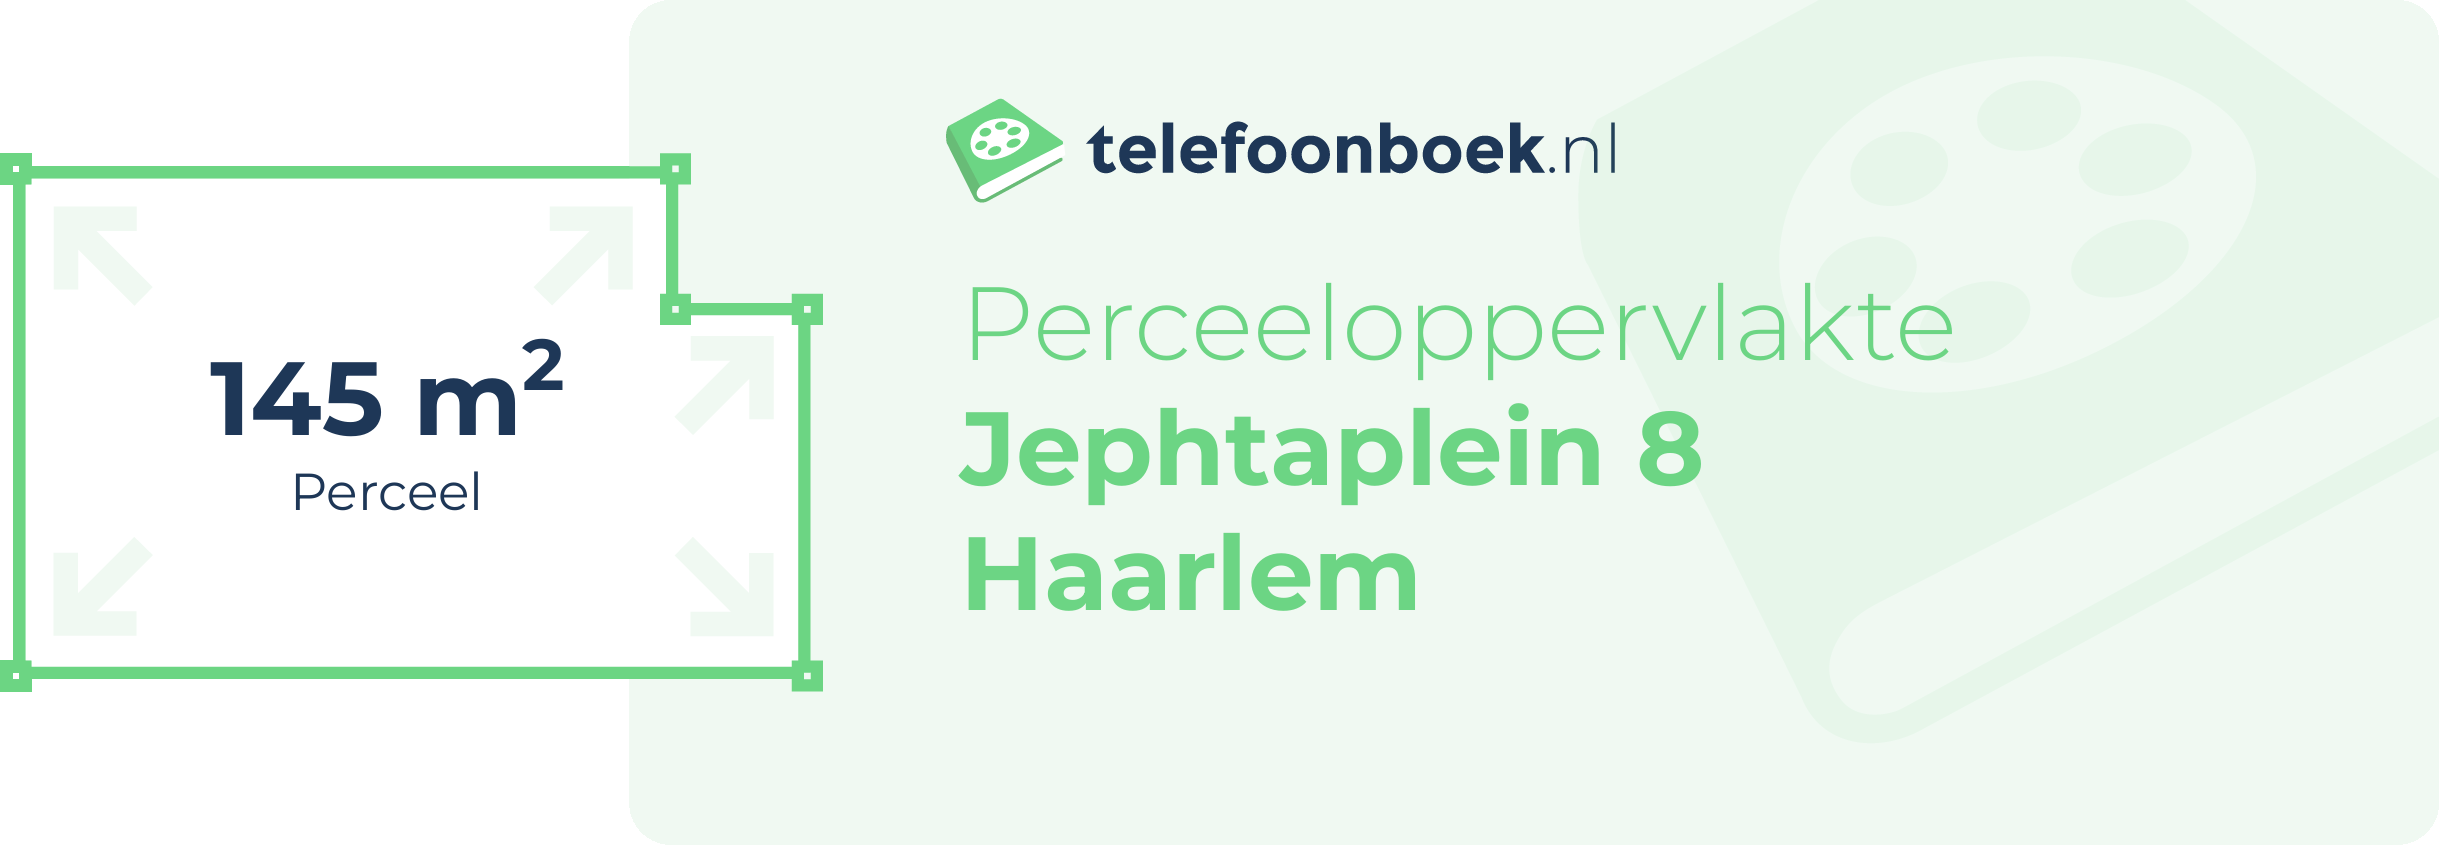 Perceeloppervlakte Jephtaplein 8 Haarlem